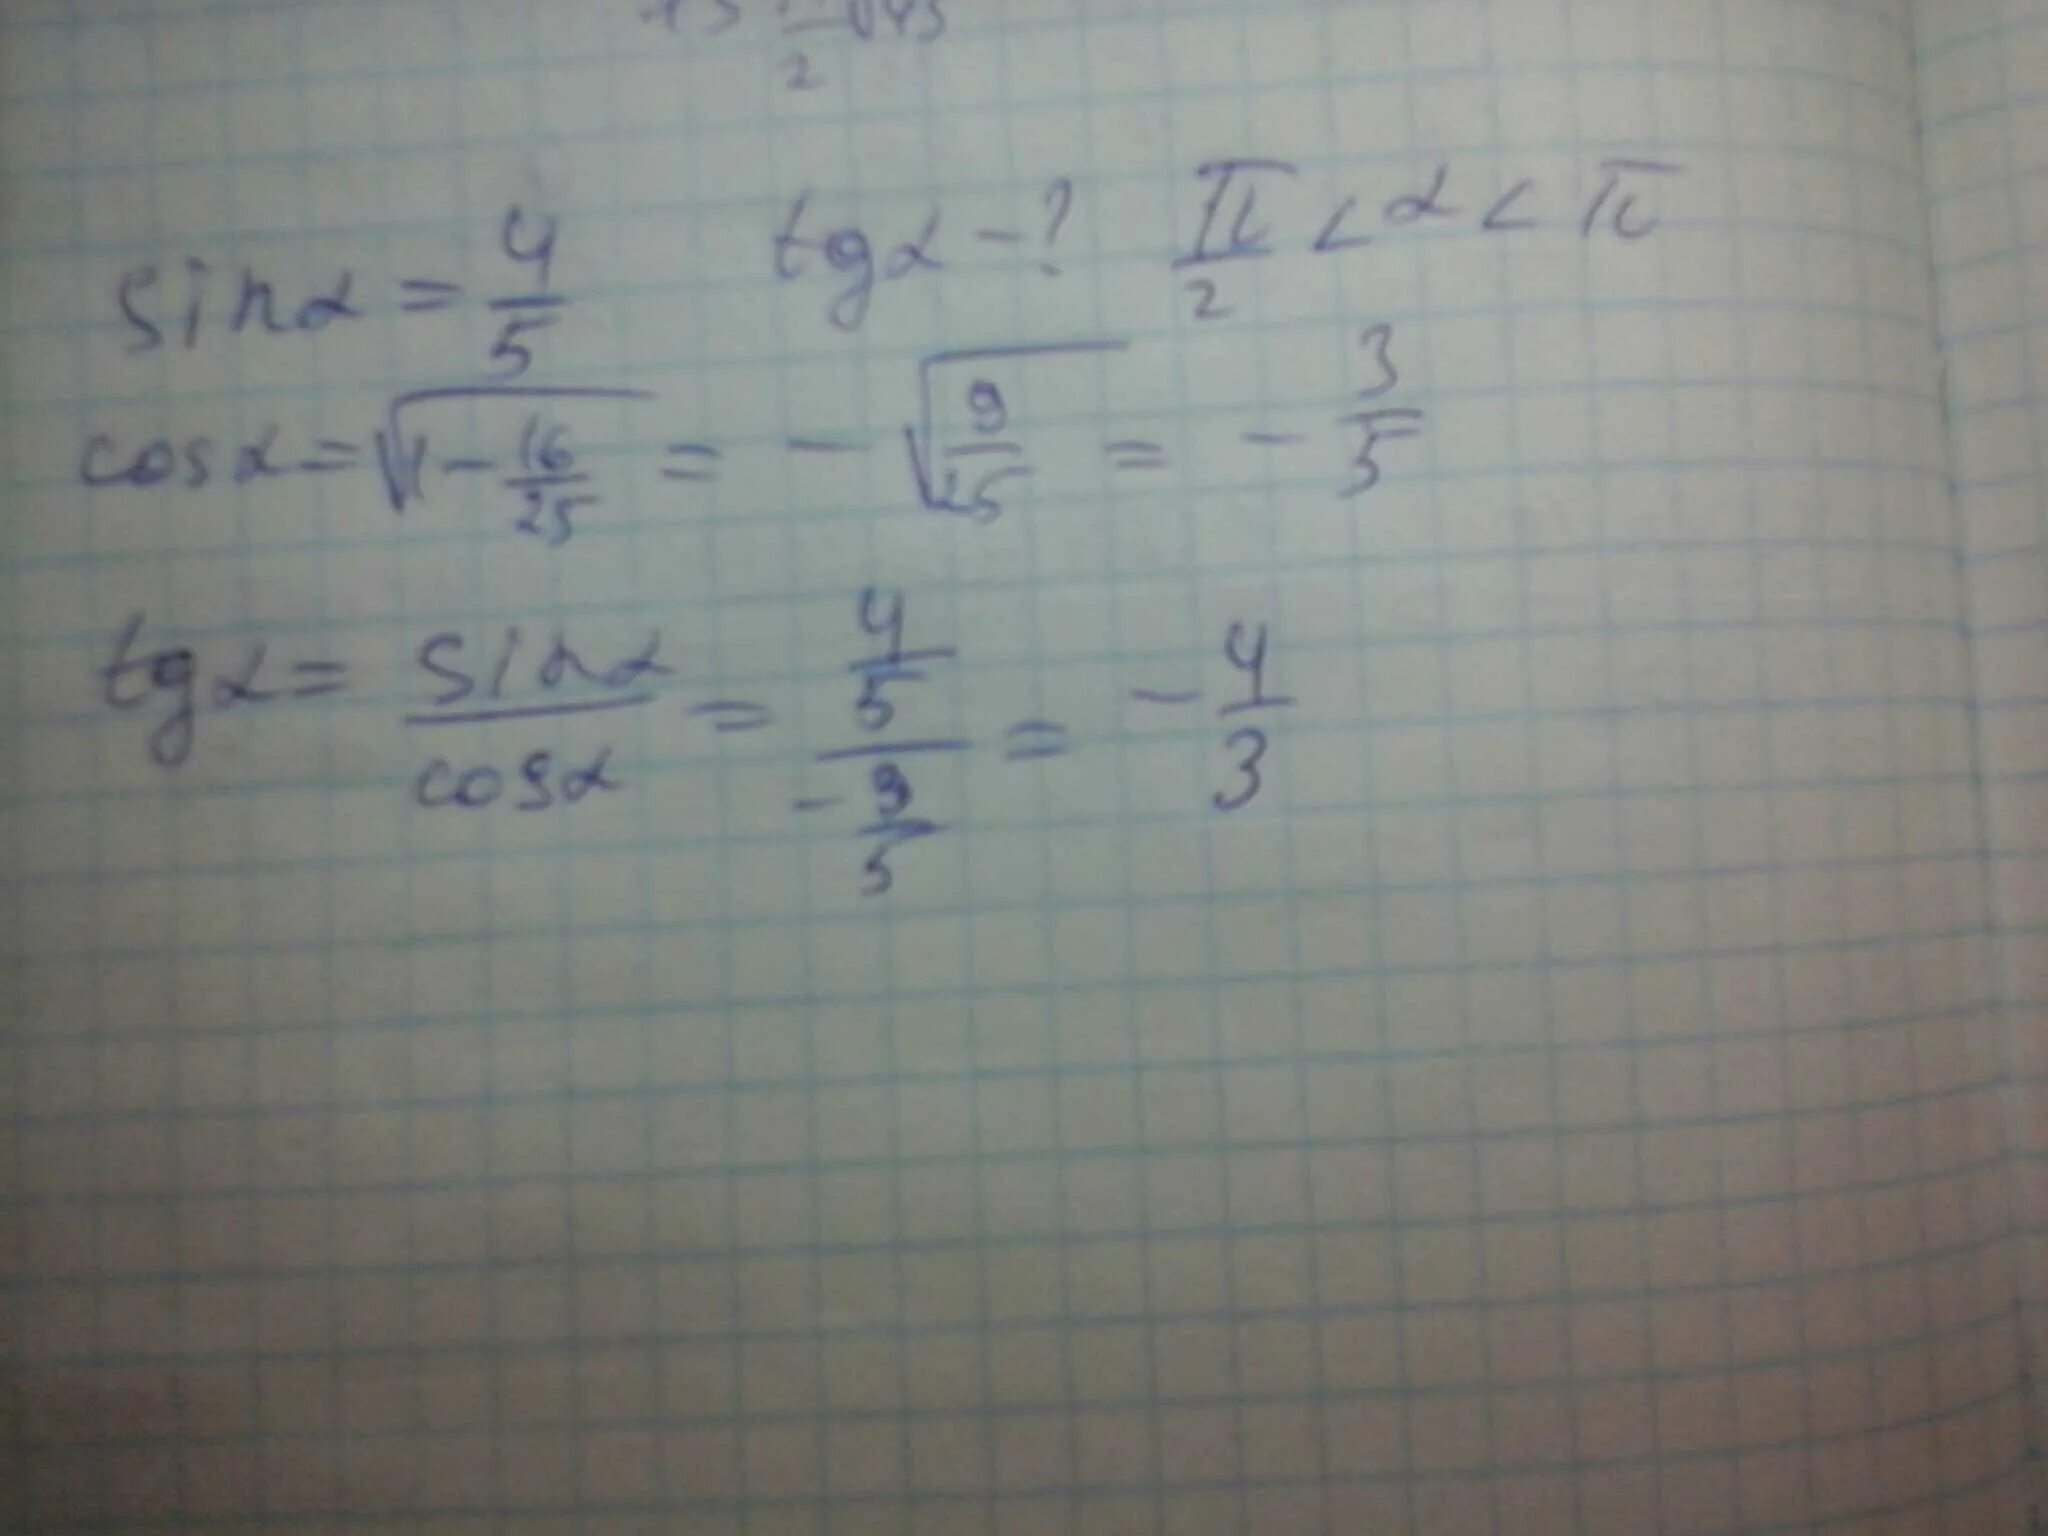 TG(Альфа-π/4); если CTG Альфа=1,6. Вычислите sin Альфа если cos Альфа -4/5. Нахождение TG Альфа. Sinальфа=4/5.